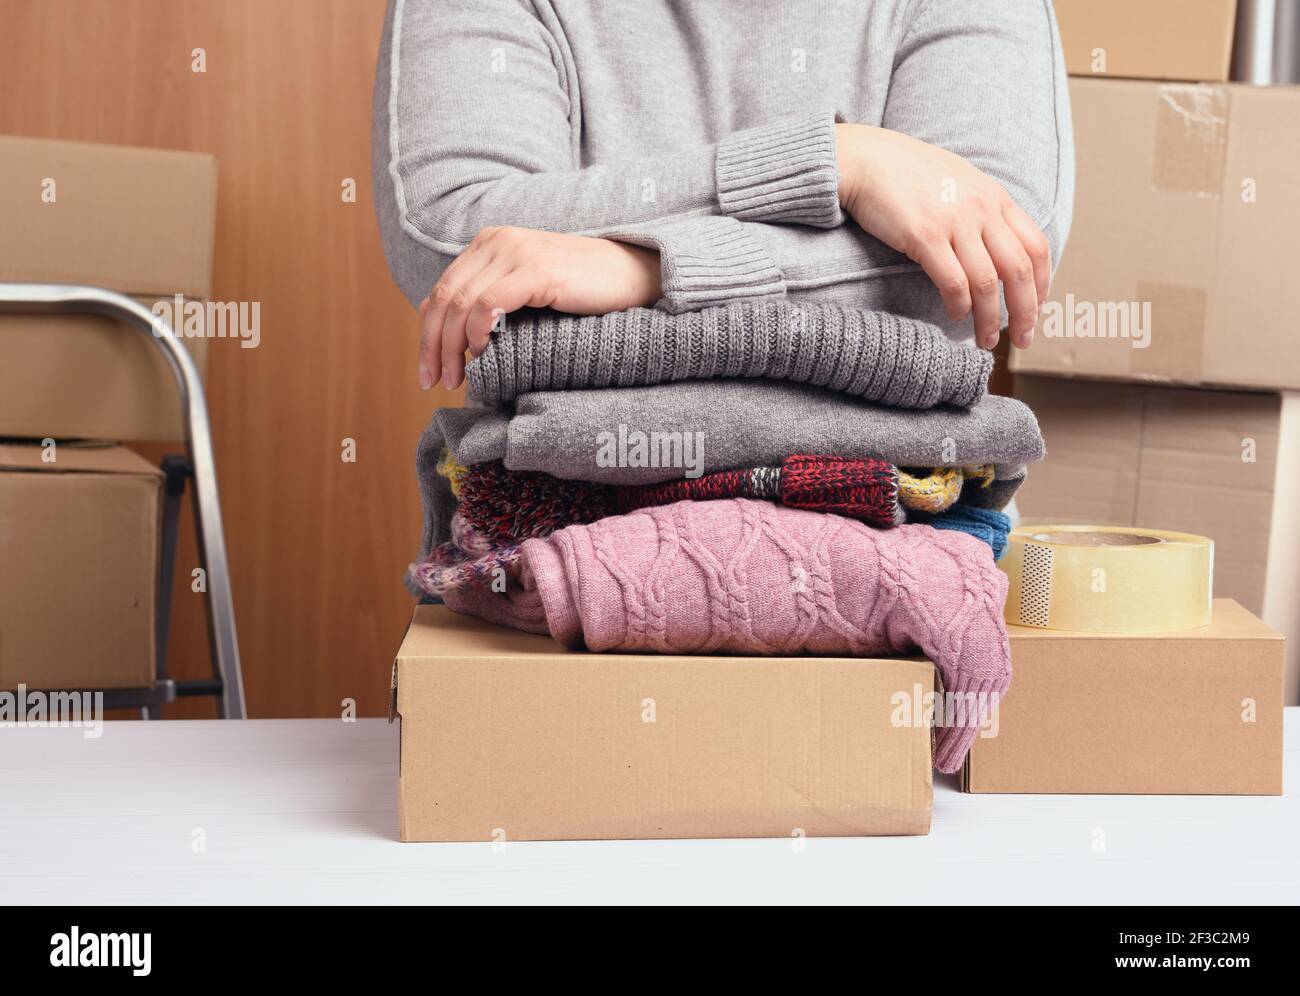 donna in un maglione grigio sta imballando i vestiti in una scatola, il concetto di assistenza e di volontariato, in movimento. Vendere cose non necessarie Foto Stock